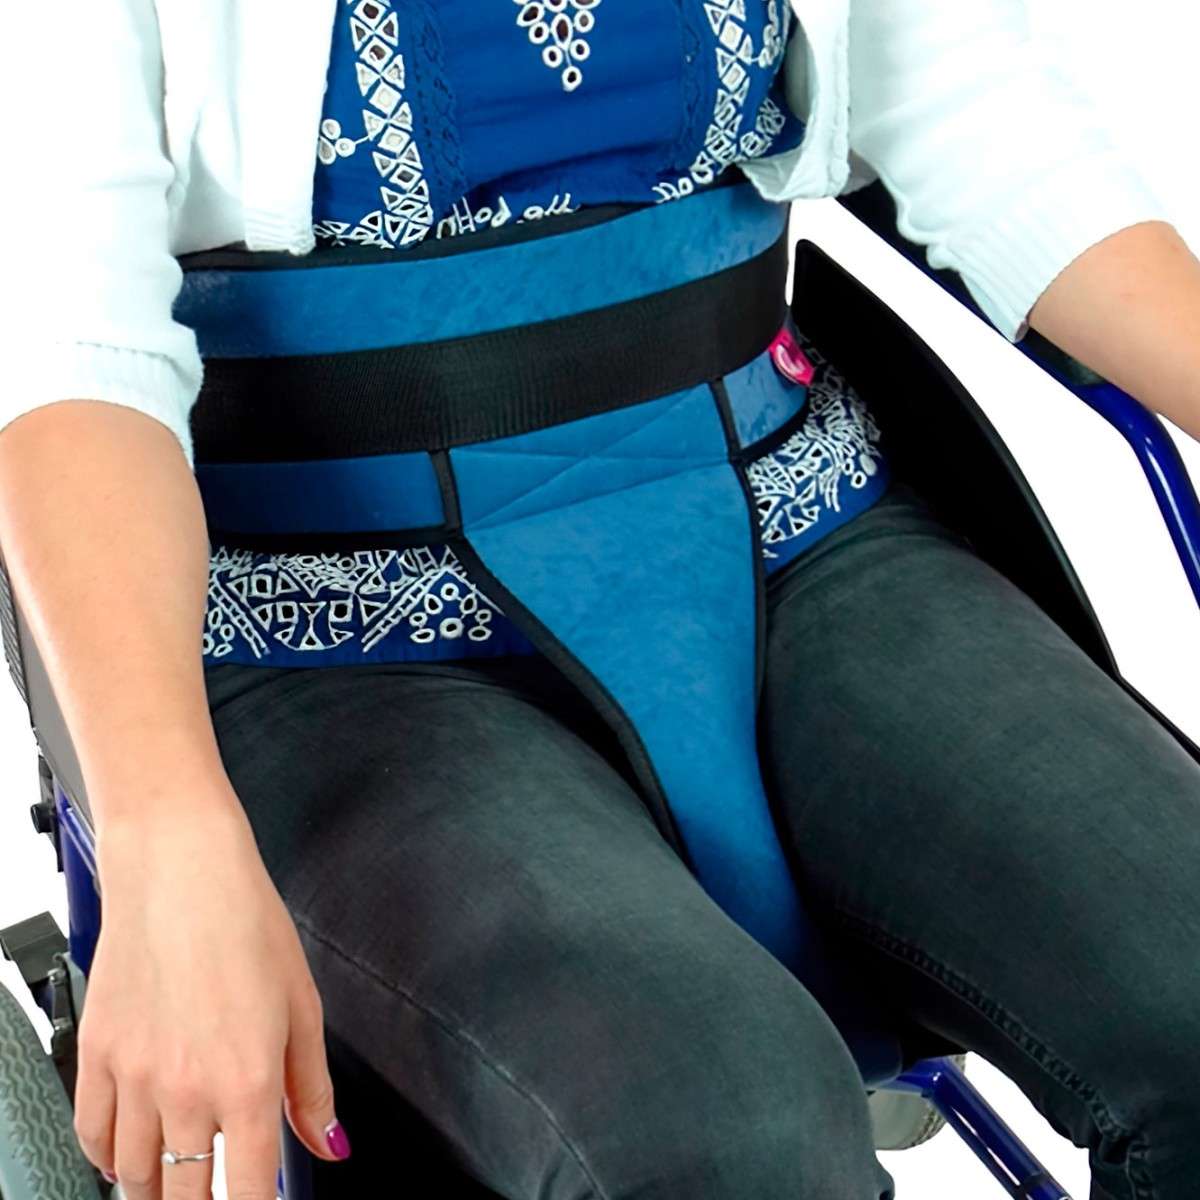 Cinturón perineal acolchado para silla de ruedas